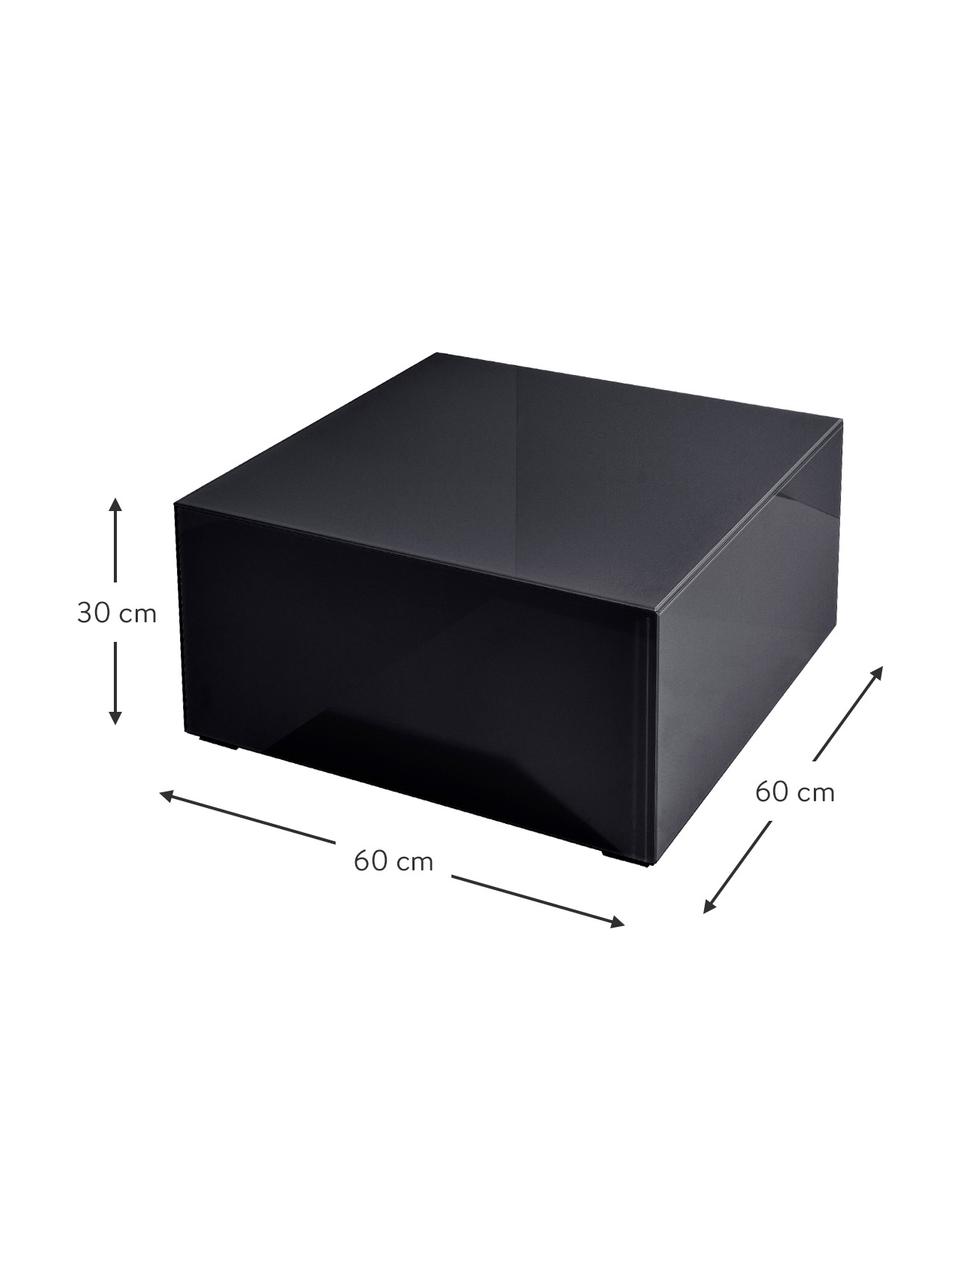 Konferenčný stolík so zrkadlovým efektom Pop, MDF-doska strednej hustoty, s FSC certifikátom, sklo, farbený, Čierna, Š 60 x V 30 cm